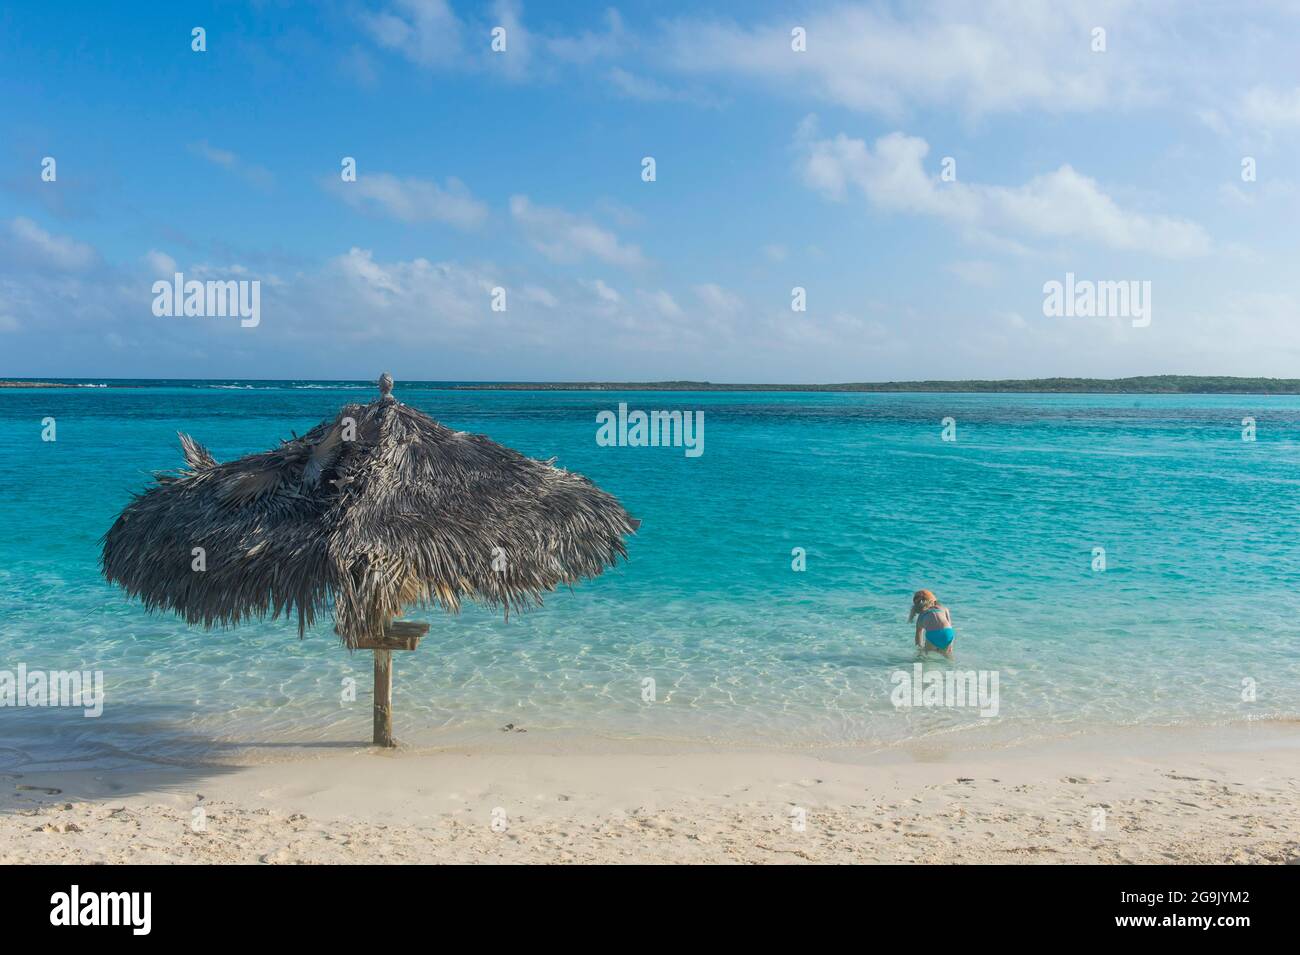 Aguas turquesas y una playa de arena blanca, Exumas, Bahamas, Caribe Foto de stock